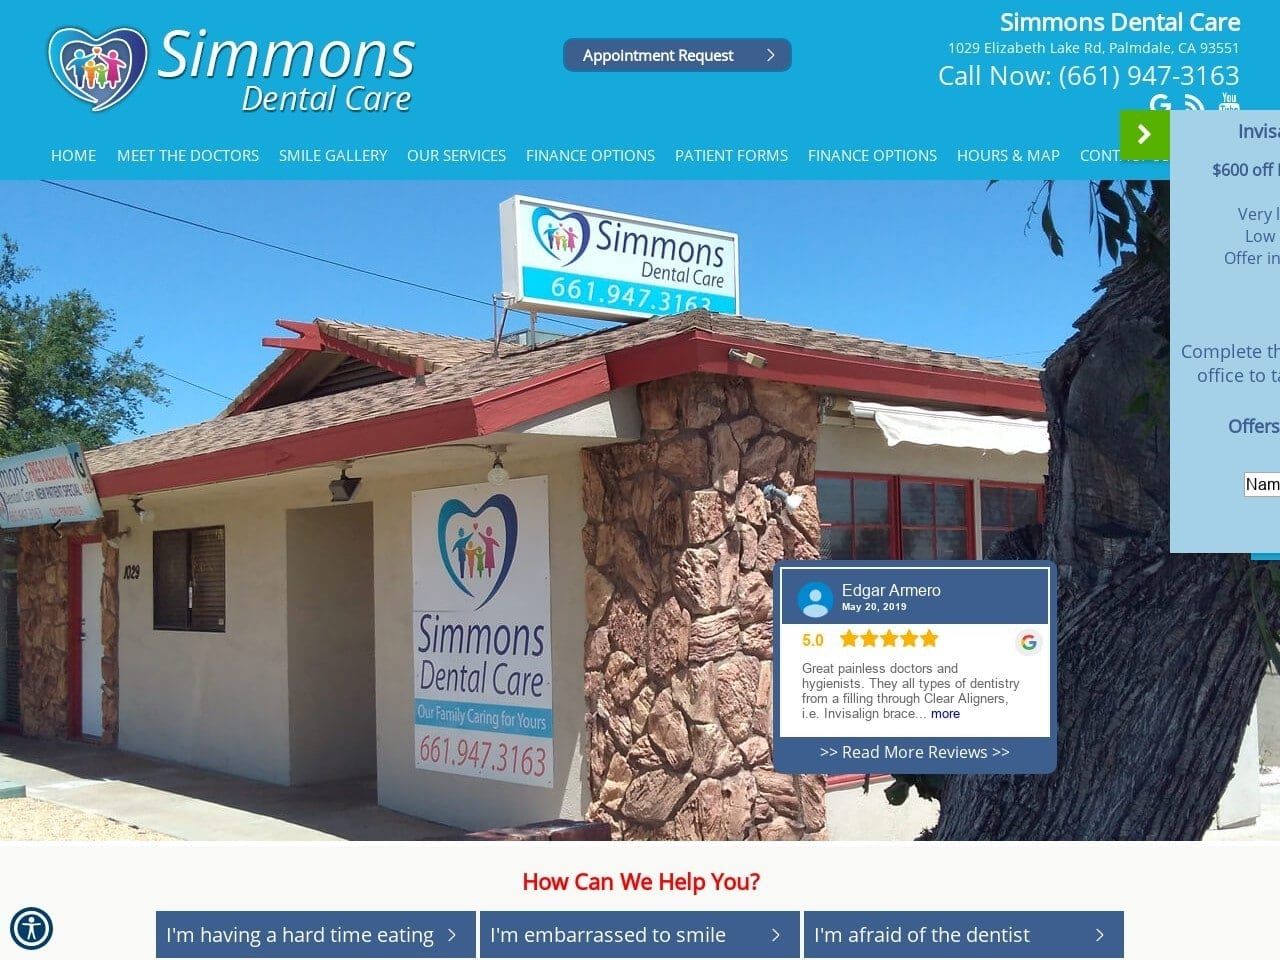 Simmons Dental Care Website Screenshot from simmonsdentalcare.com